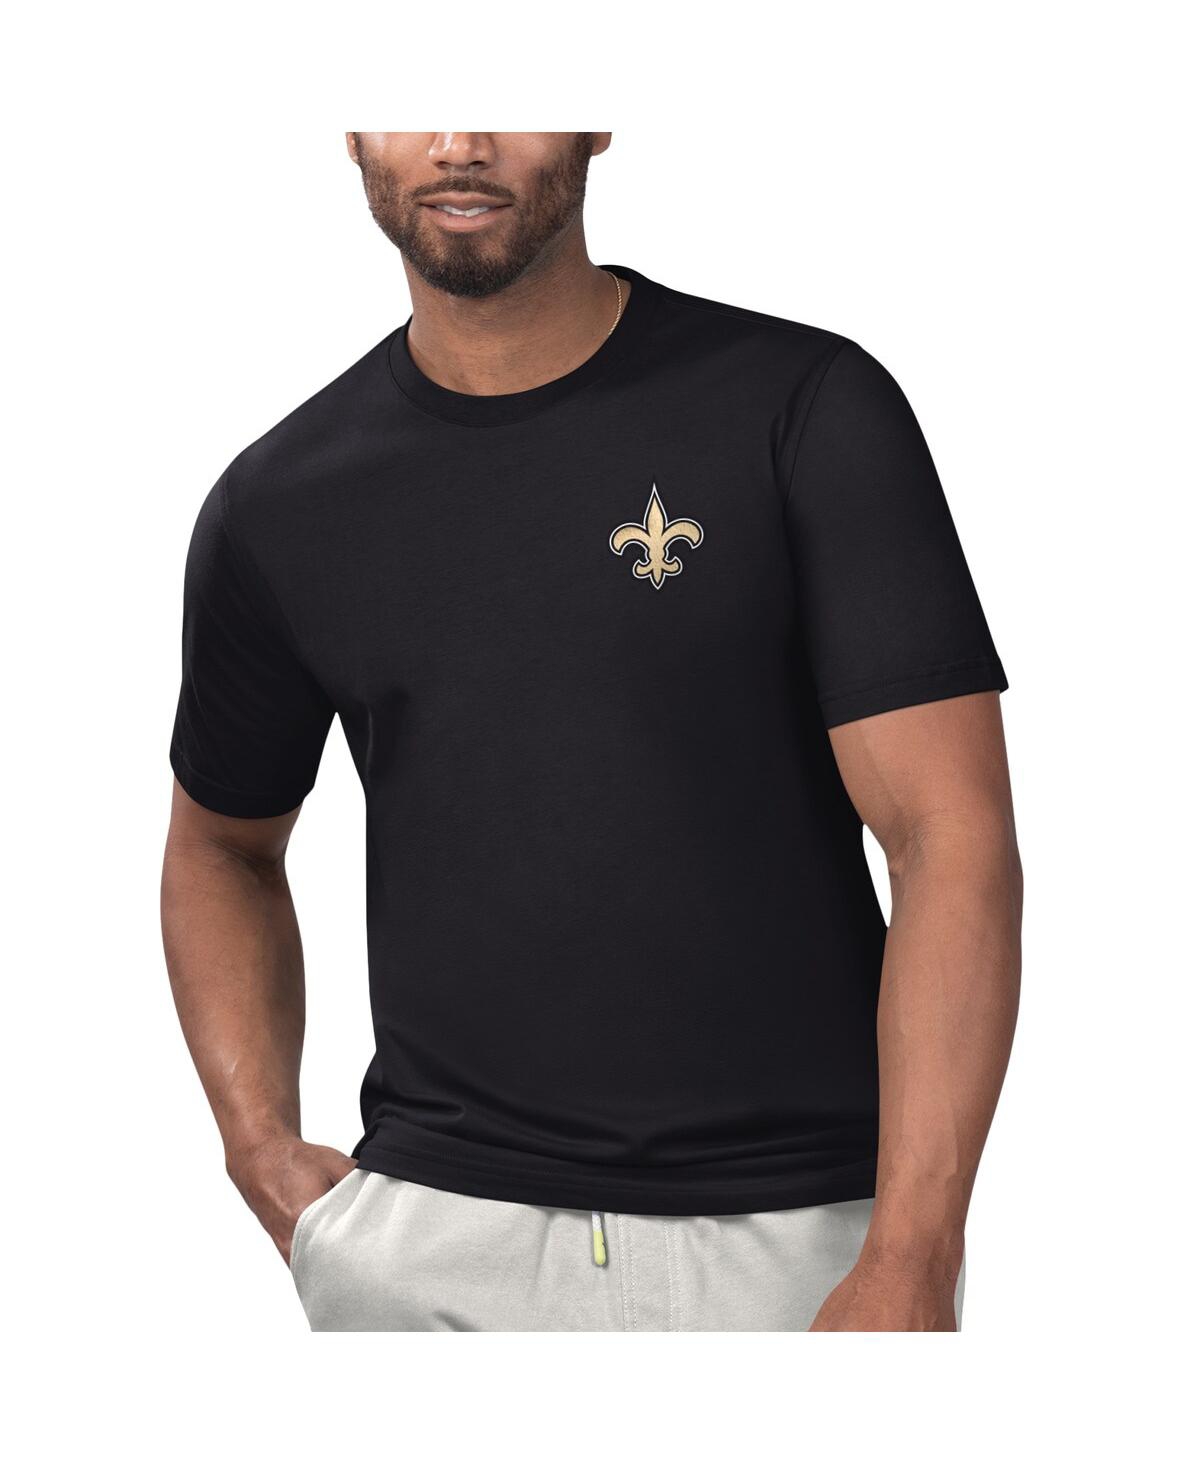 Men's Margaritaville Black New Orleans Saints Licensed to Chill T-shirt - Black